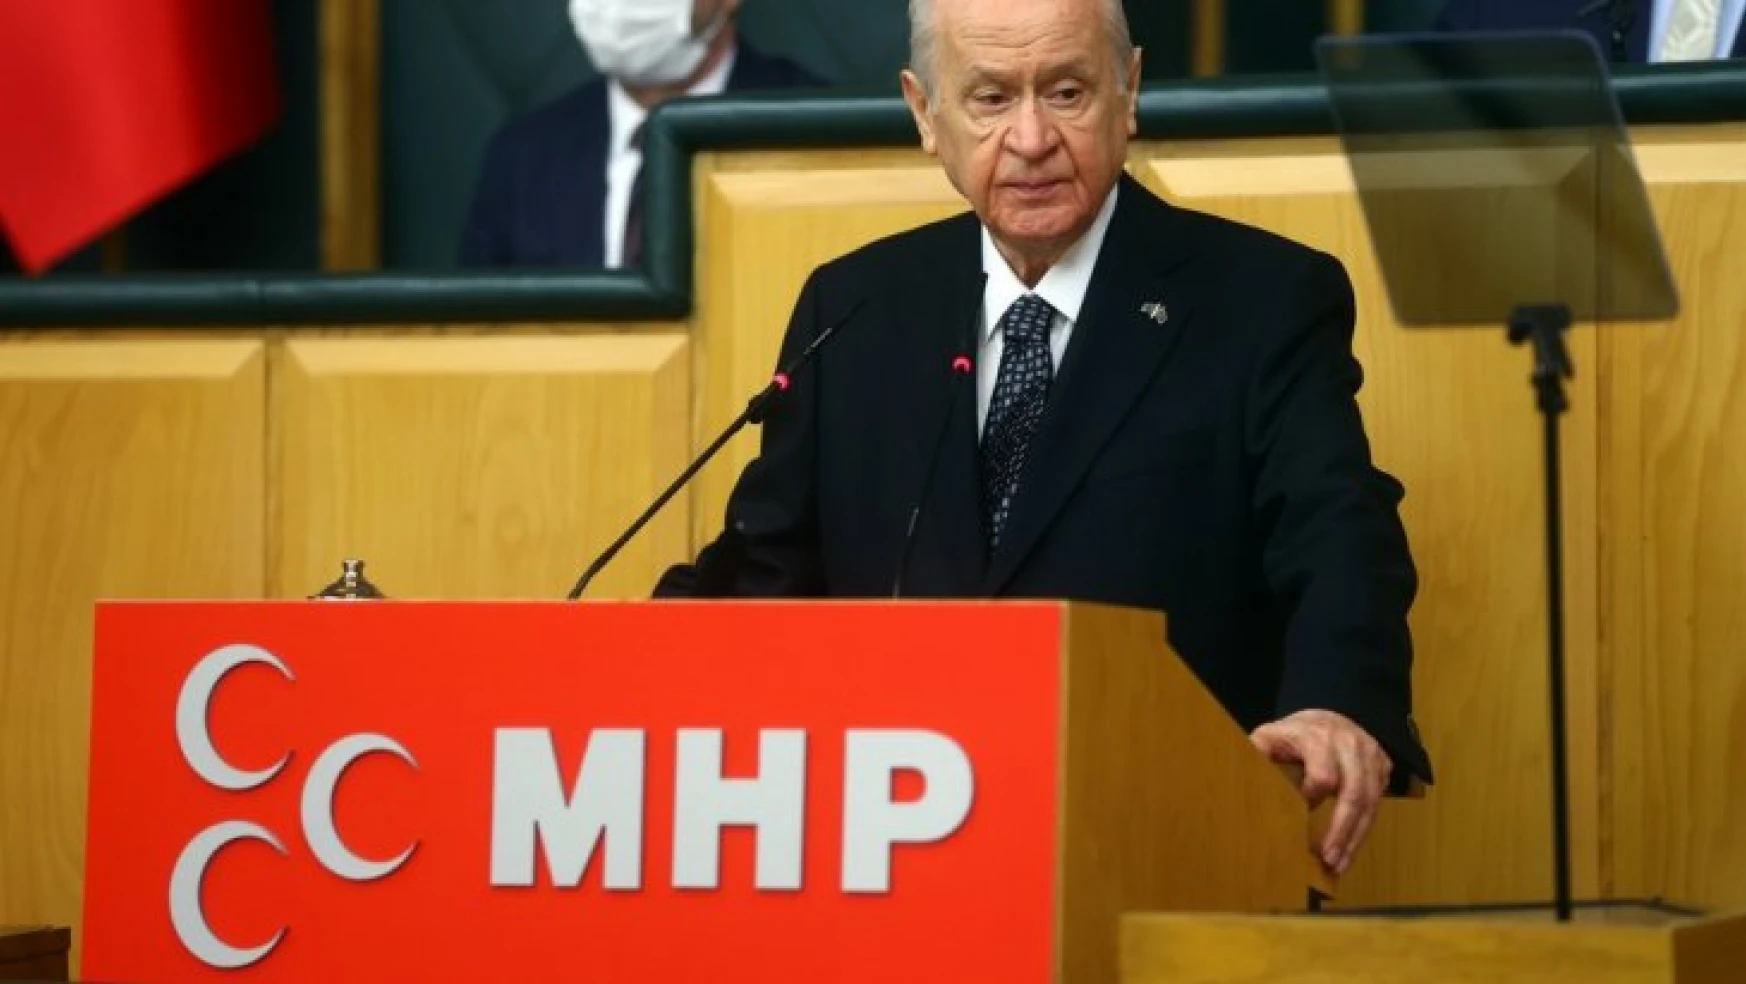 MHP Lideri Bahçeli: Türkiye cephe ülkesi olmayacaktır.